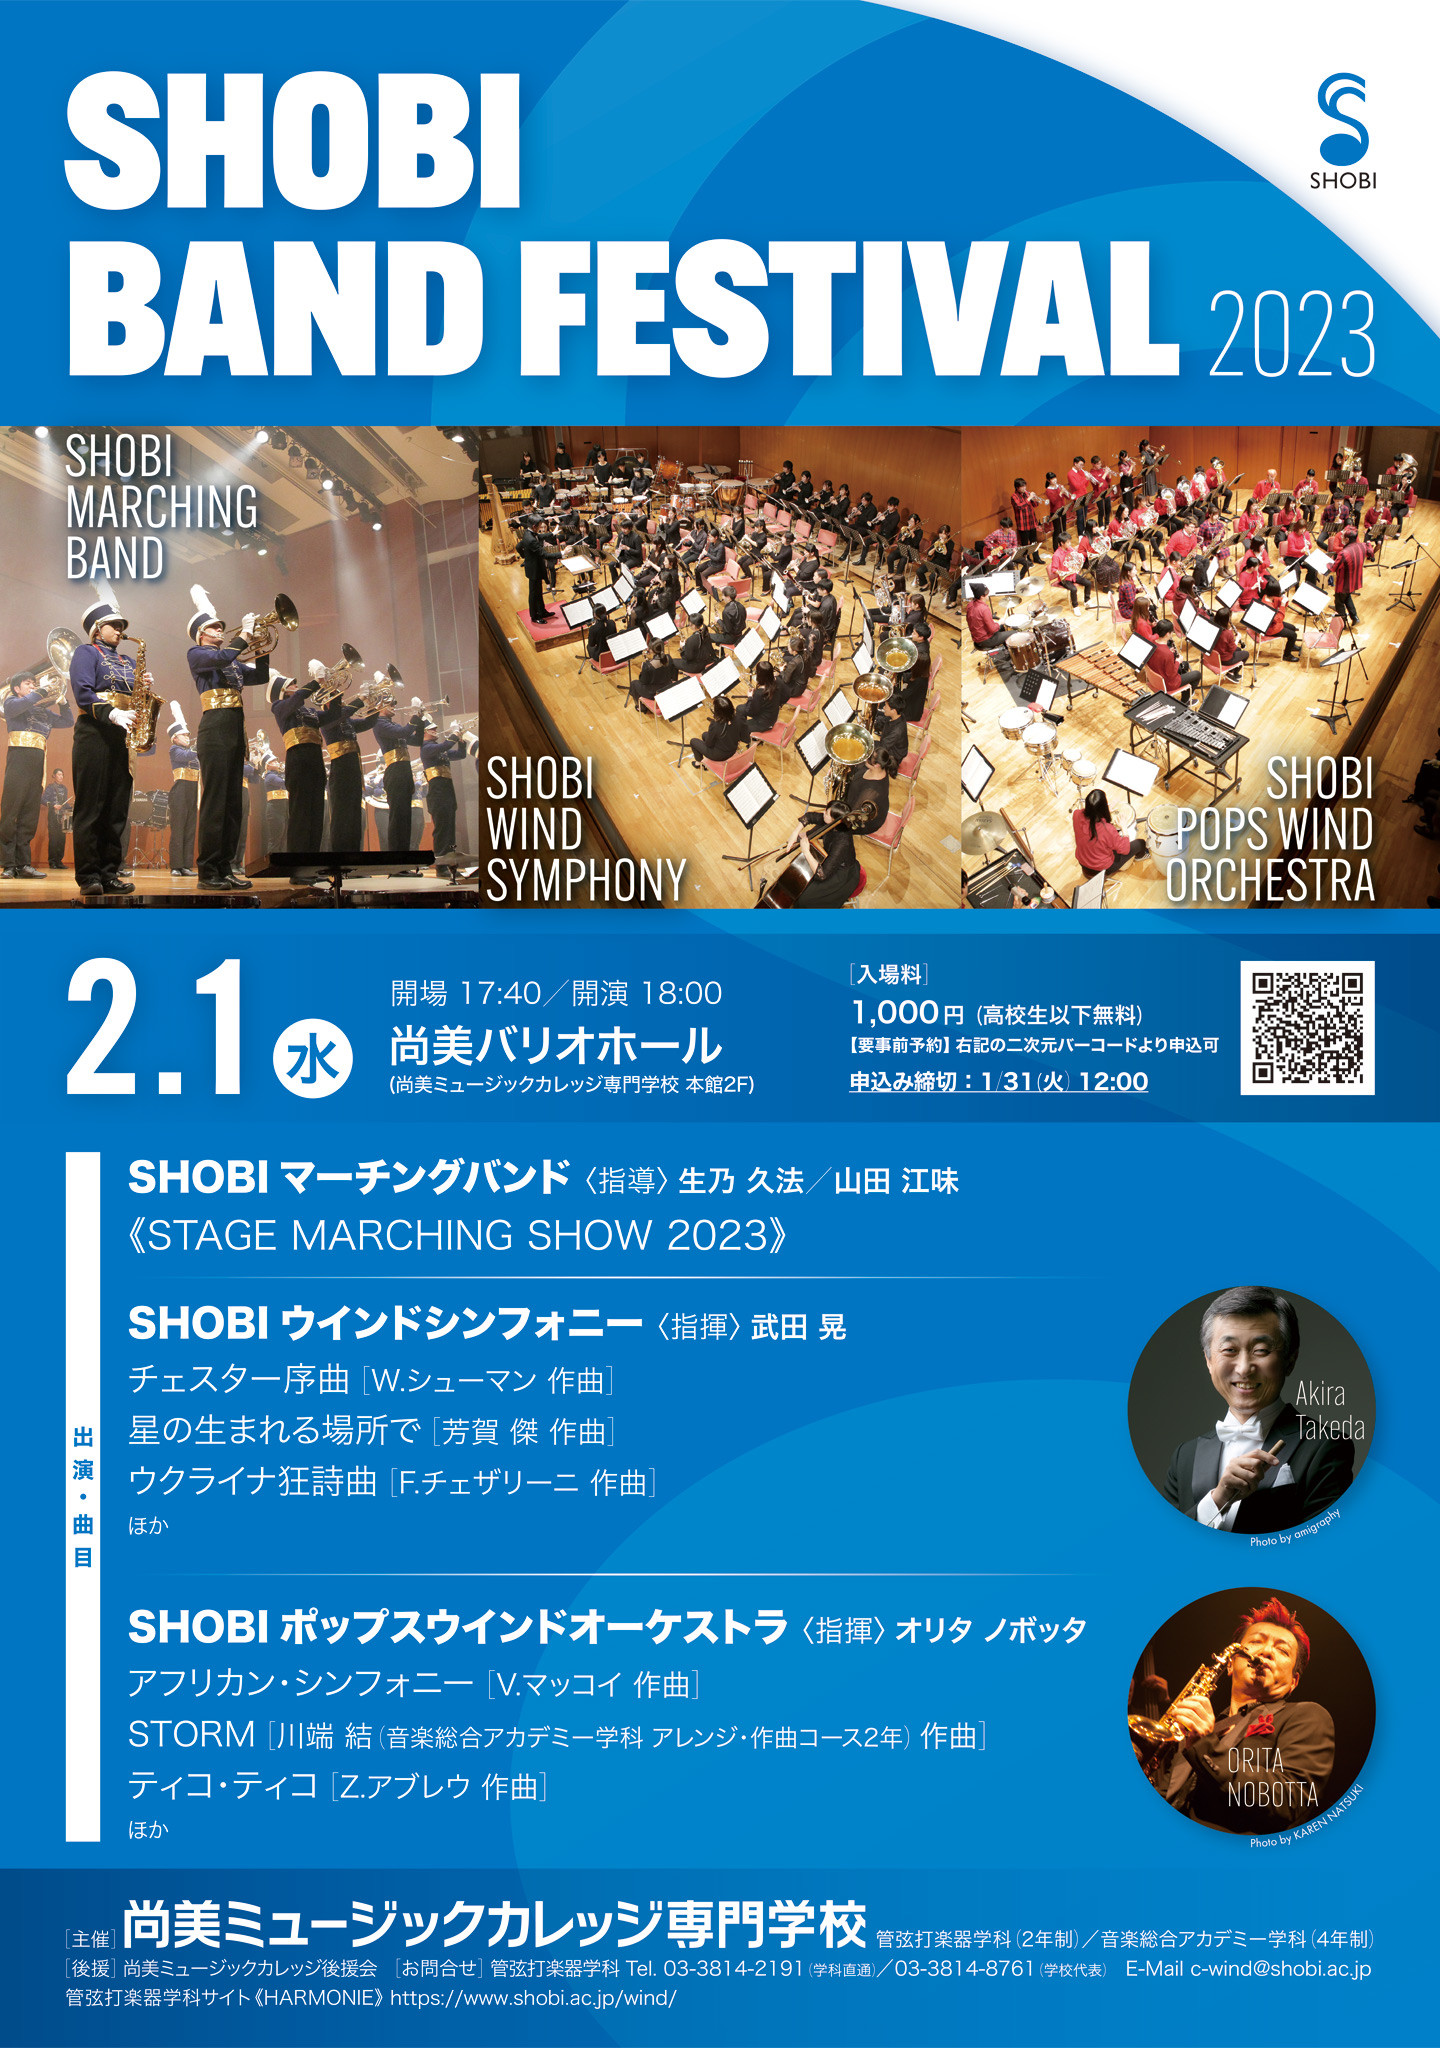 【2月1日開催】SHOBI BAND FESTIVAL 2023